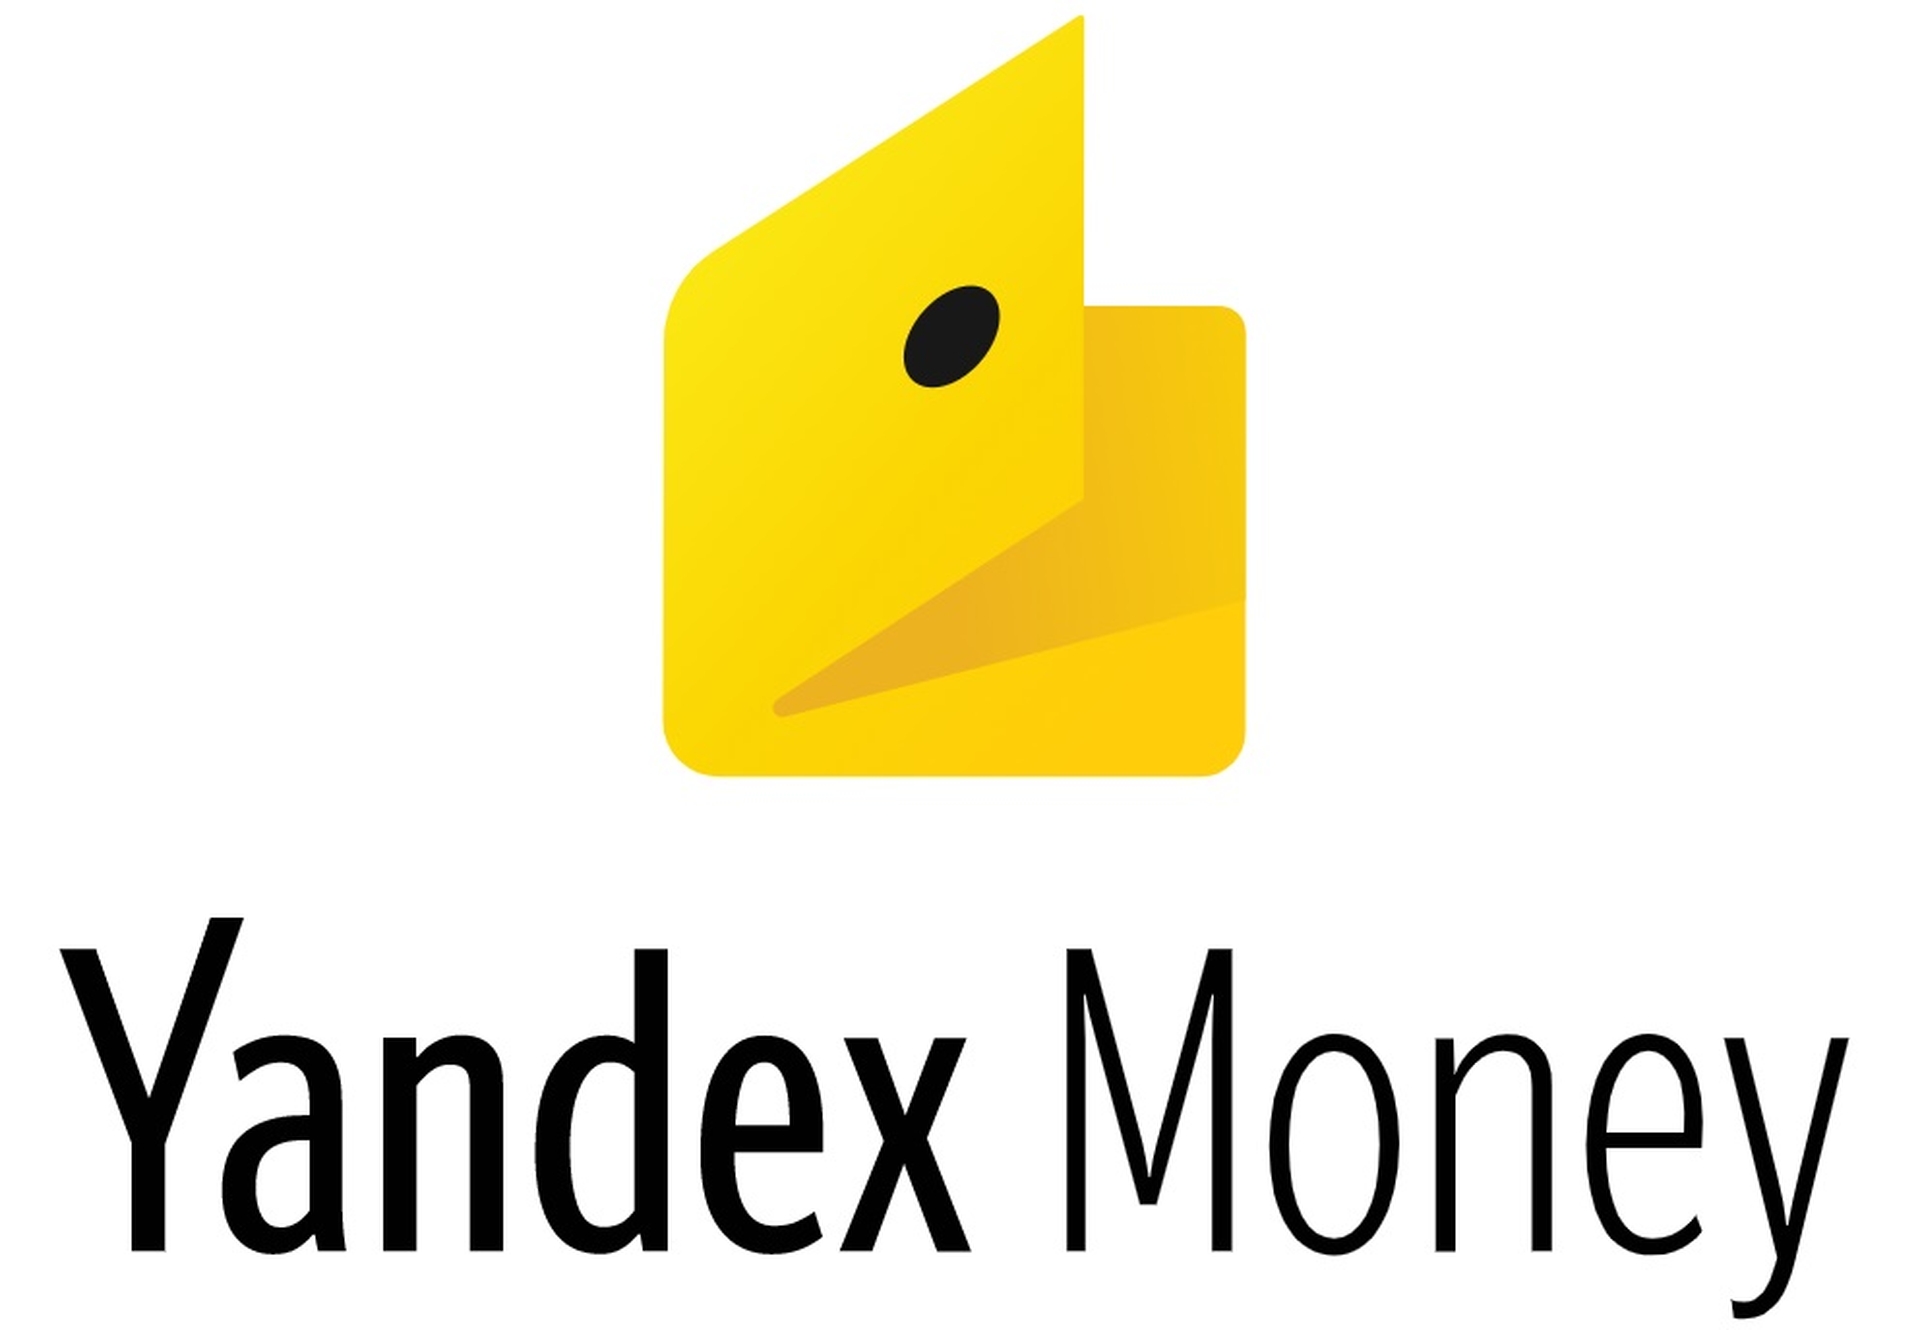 In diesem Artikel werden wir behandeln, wie Sie Bitcoin mit Yandex Money kaufen, damit Sie diesen Service bei Ihrem nächsten Bitcoin-Kauf nutzen können.